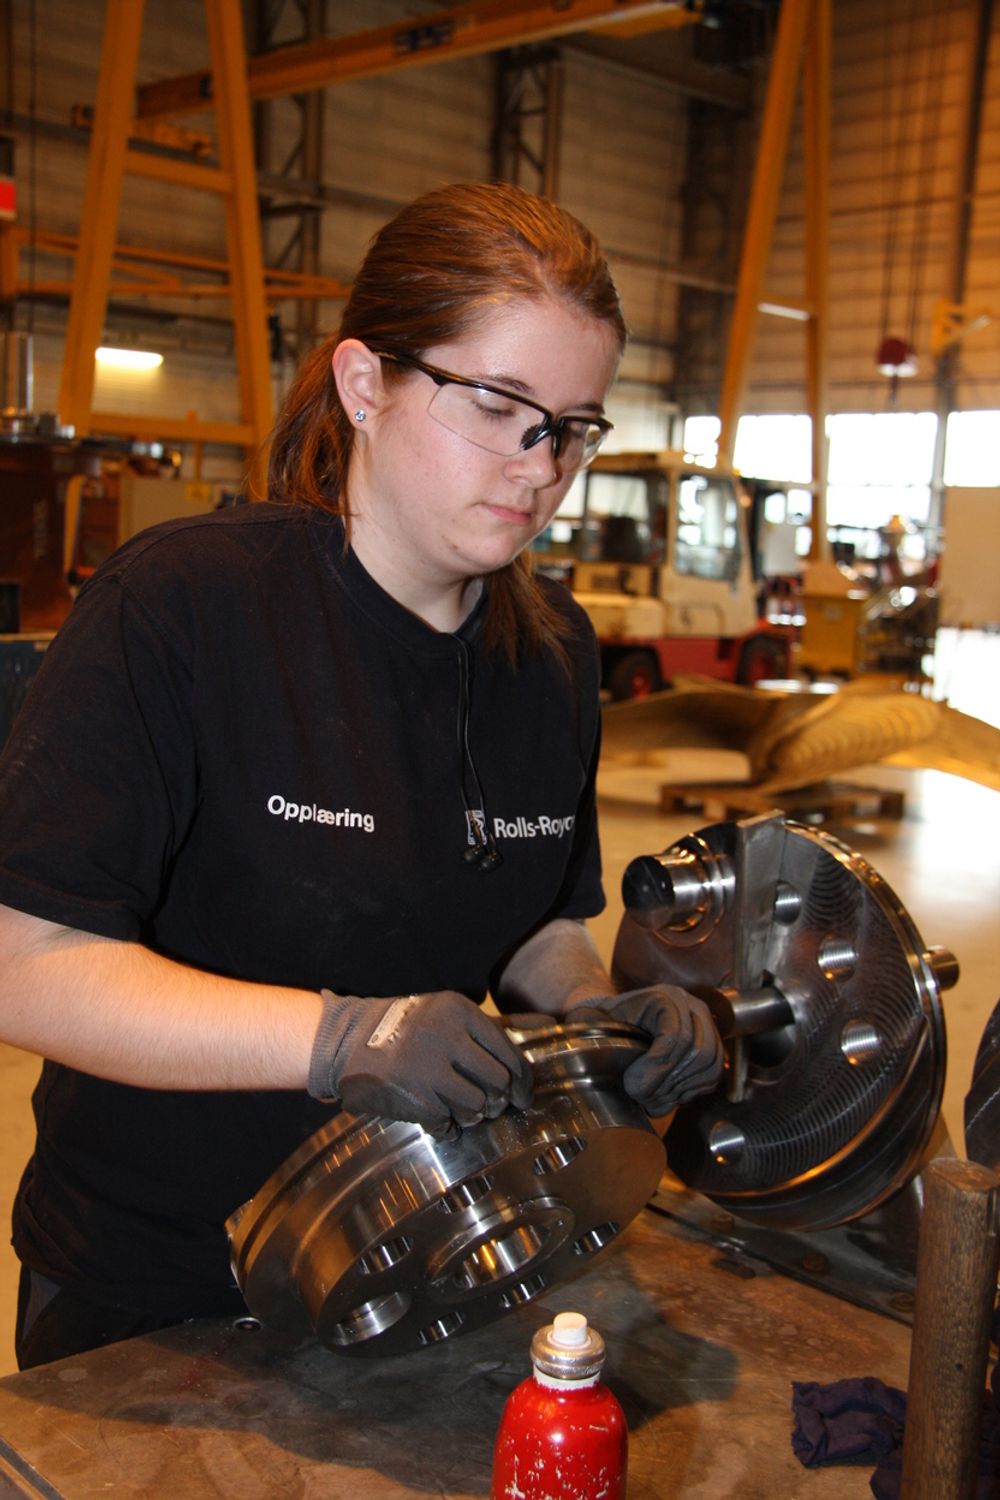 OPPLÆRING: Sigrid Sellereite er på opplæring. Her monterer hun propeller ved Rolls-Royce i Ulsteinvik.